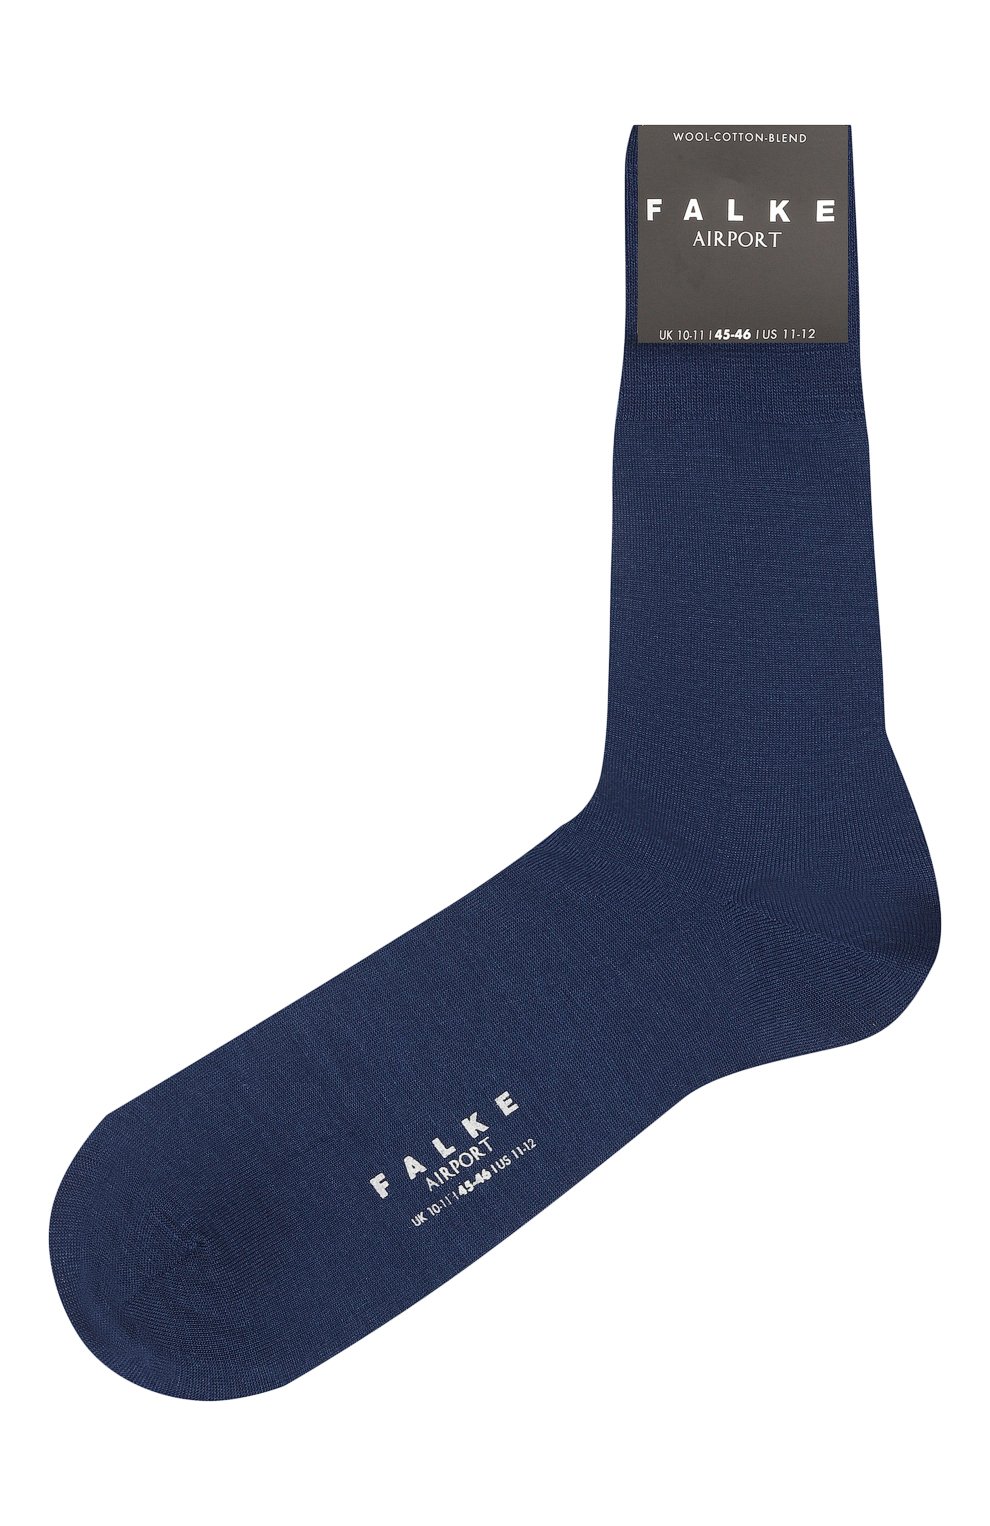 Мужские носки из шерсти и хлопка FALKE темно-синего цвета, арт. 14435. | Фото 1 (Материал внешний: Шерсть; Кросс-КТ: бельё)